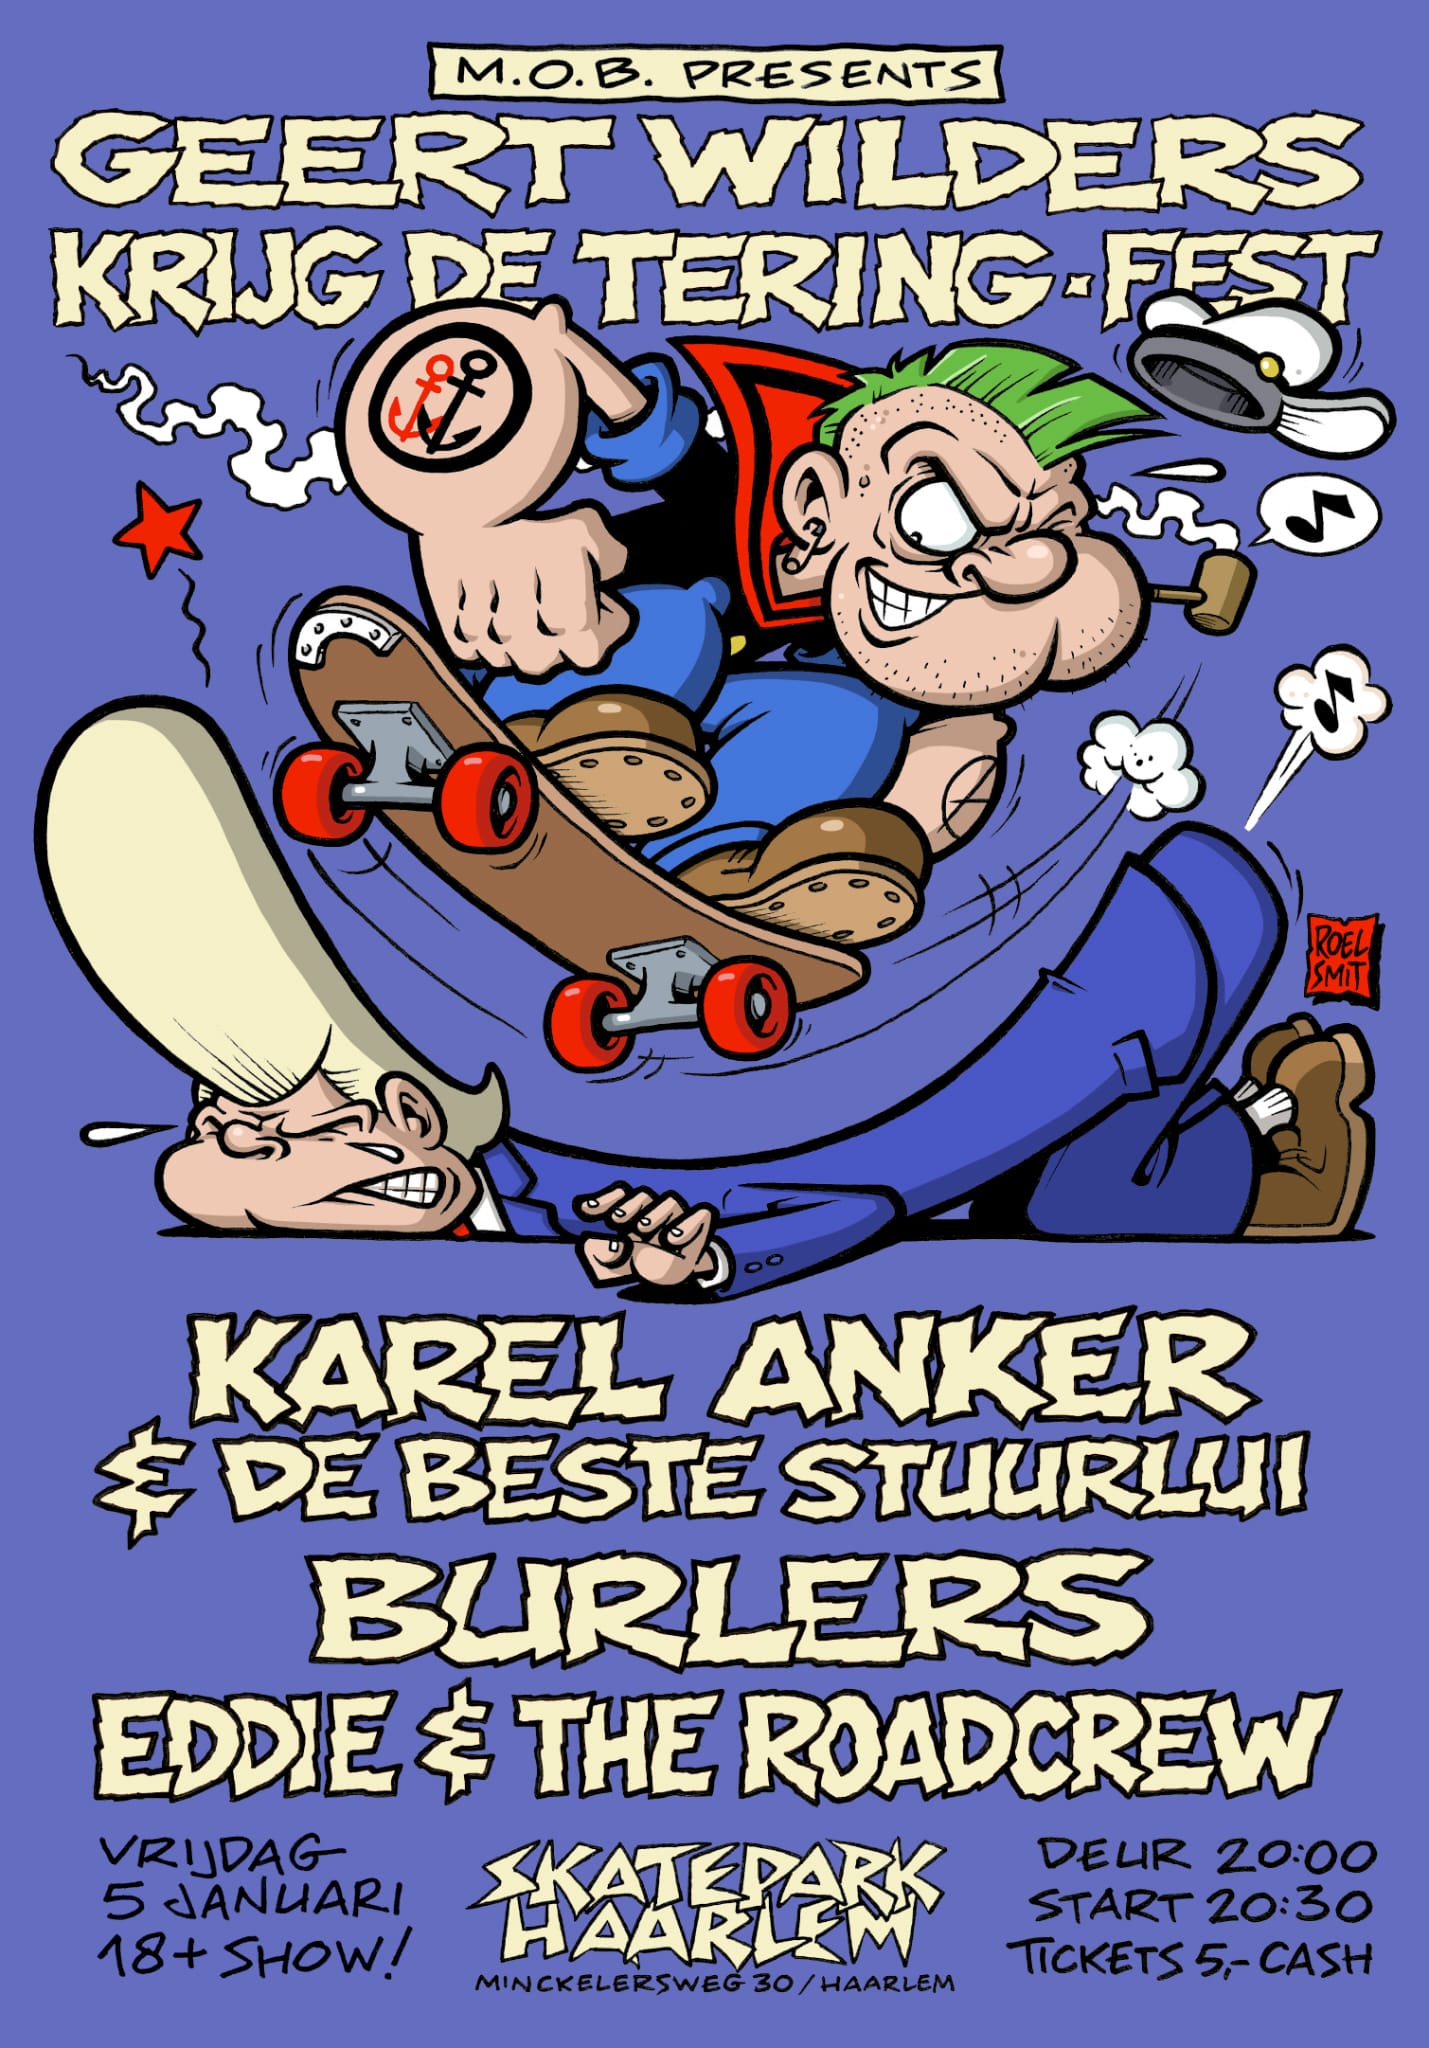 Karel Anker, Burlers & Eddie and The Roadcrew